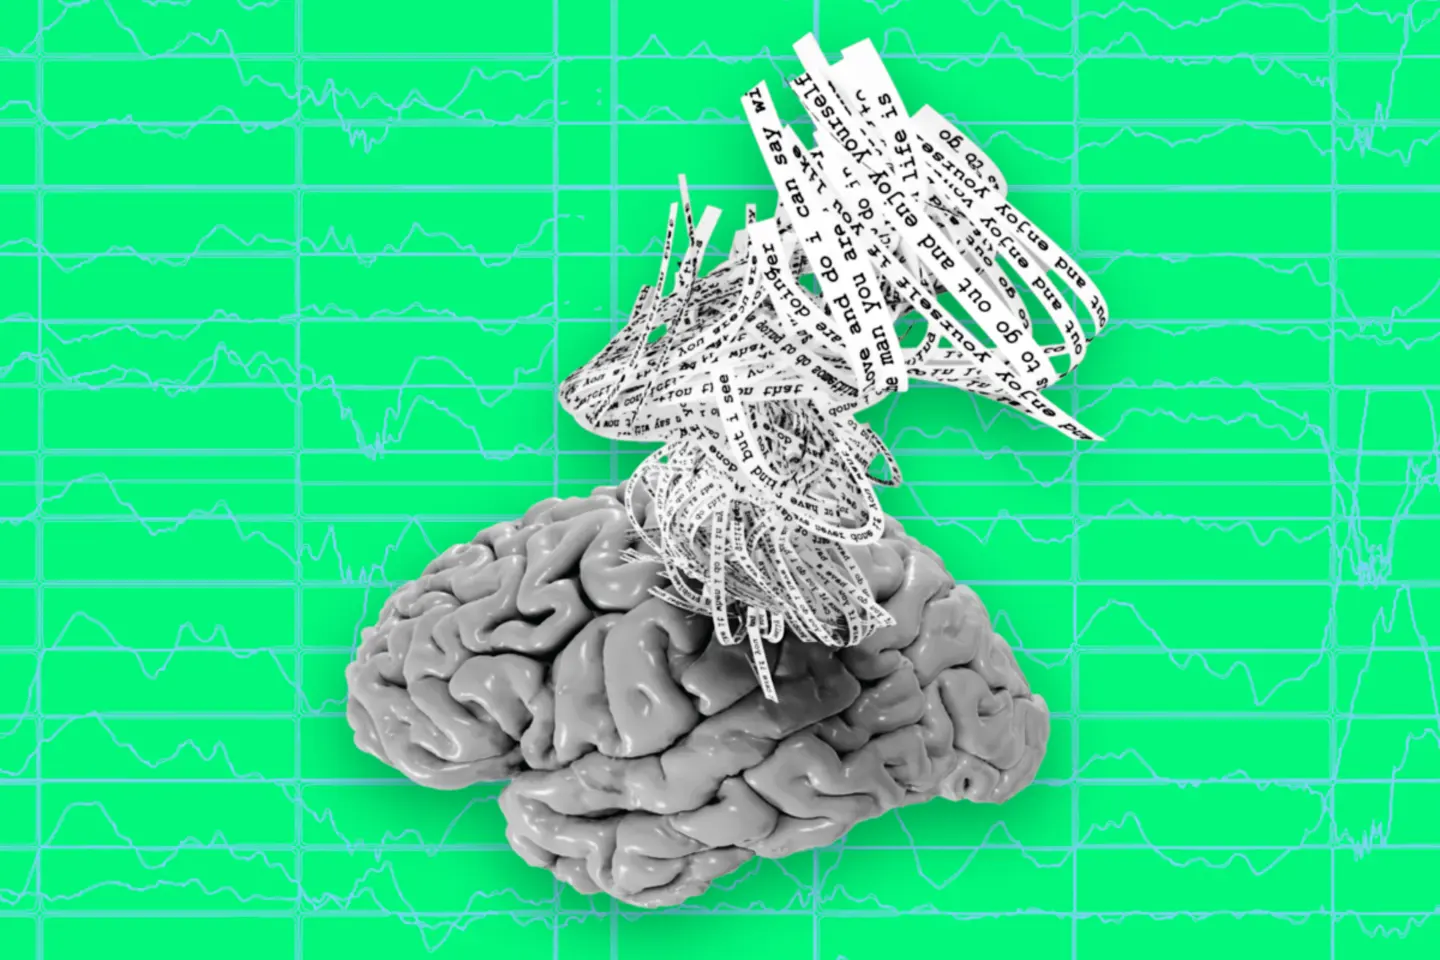 科技生活| 突破性AI系統「讀心術」  大腦活動圖像轉化文字